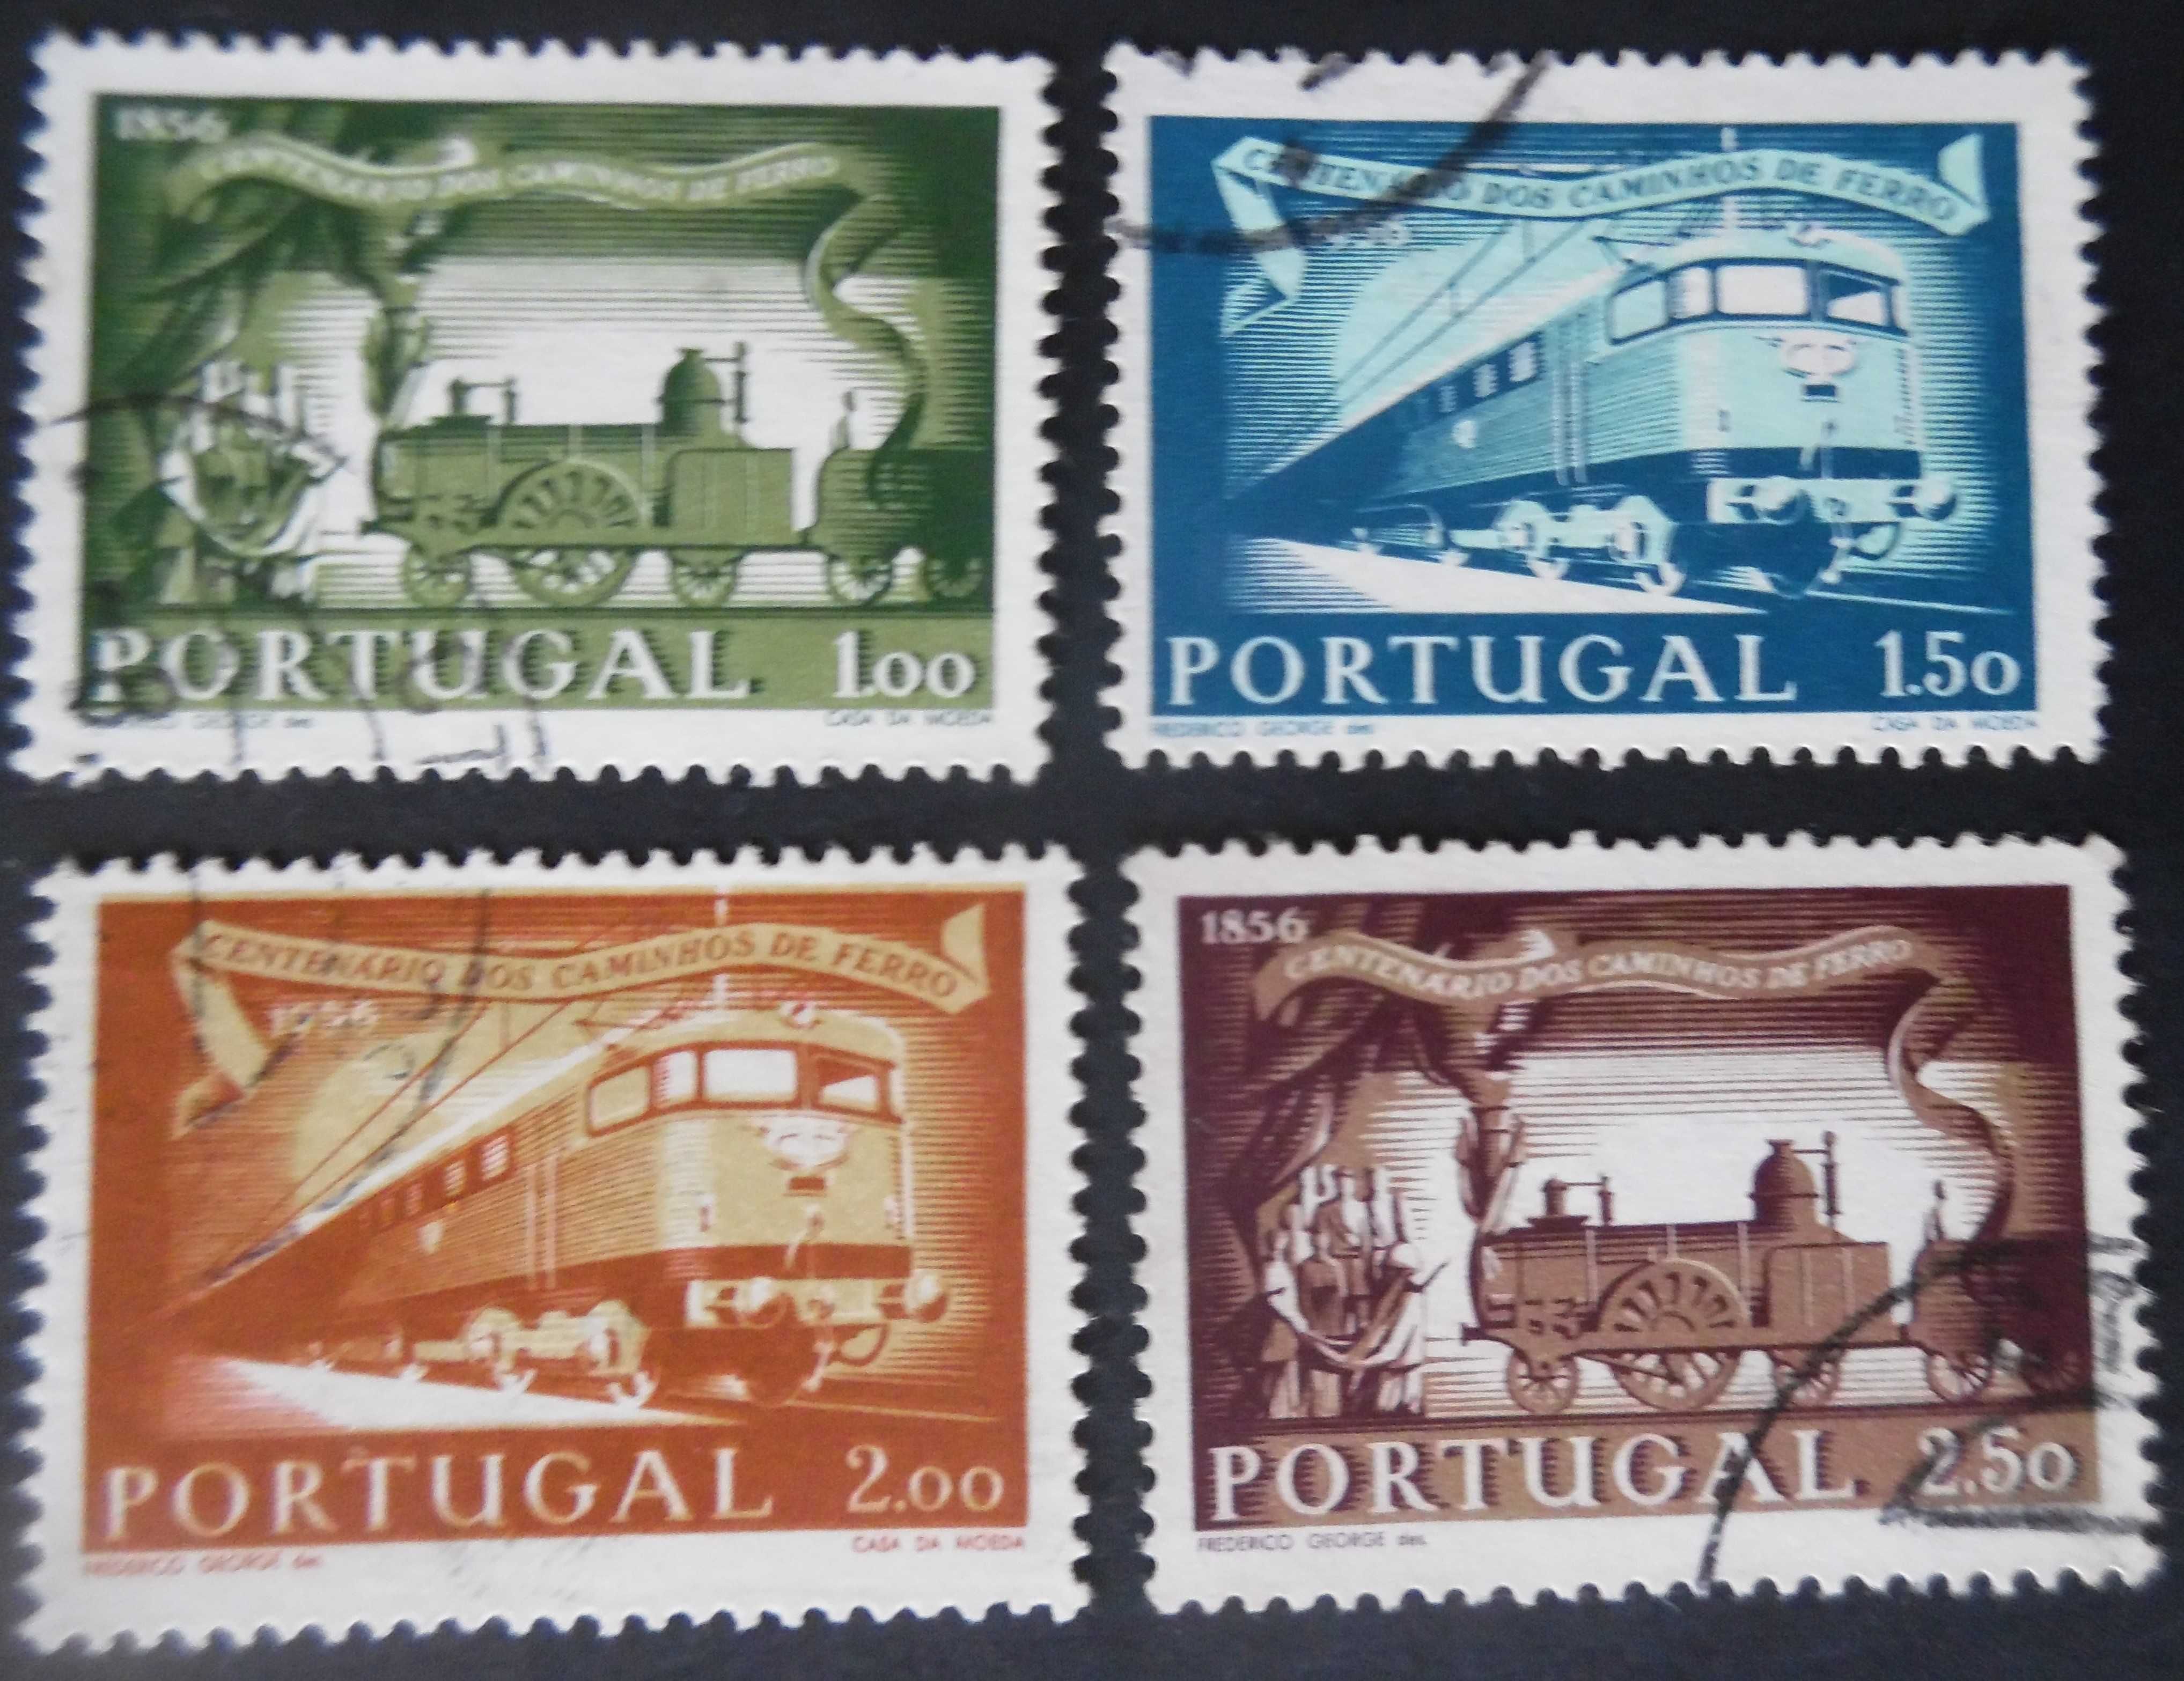 Selos Portugal 1956-Centenário Caminhos Ferro Completo usados